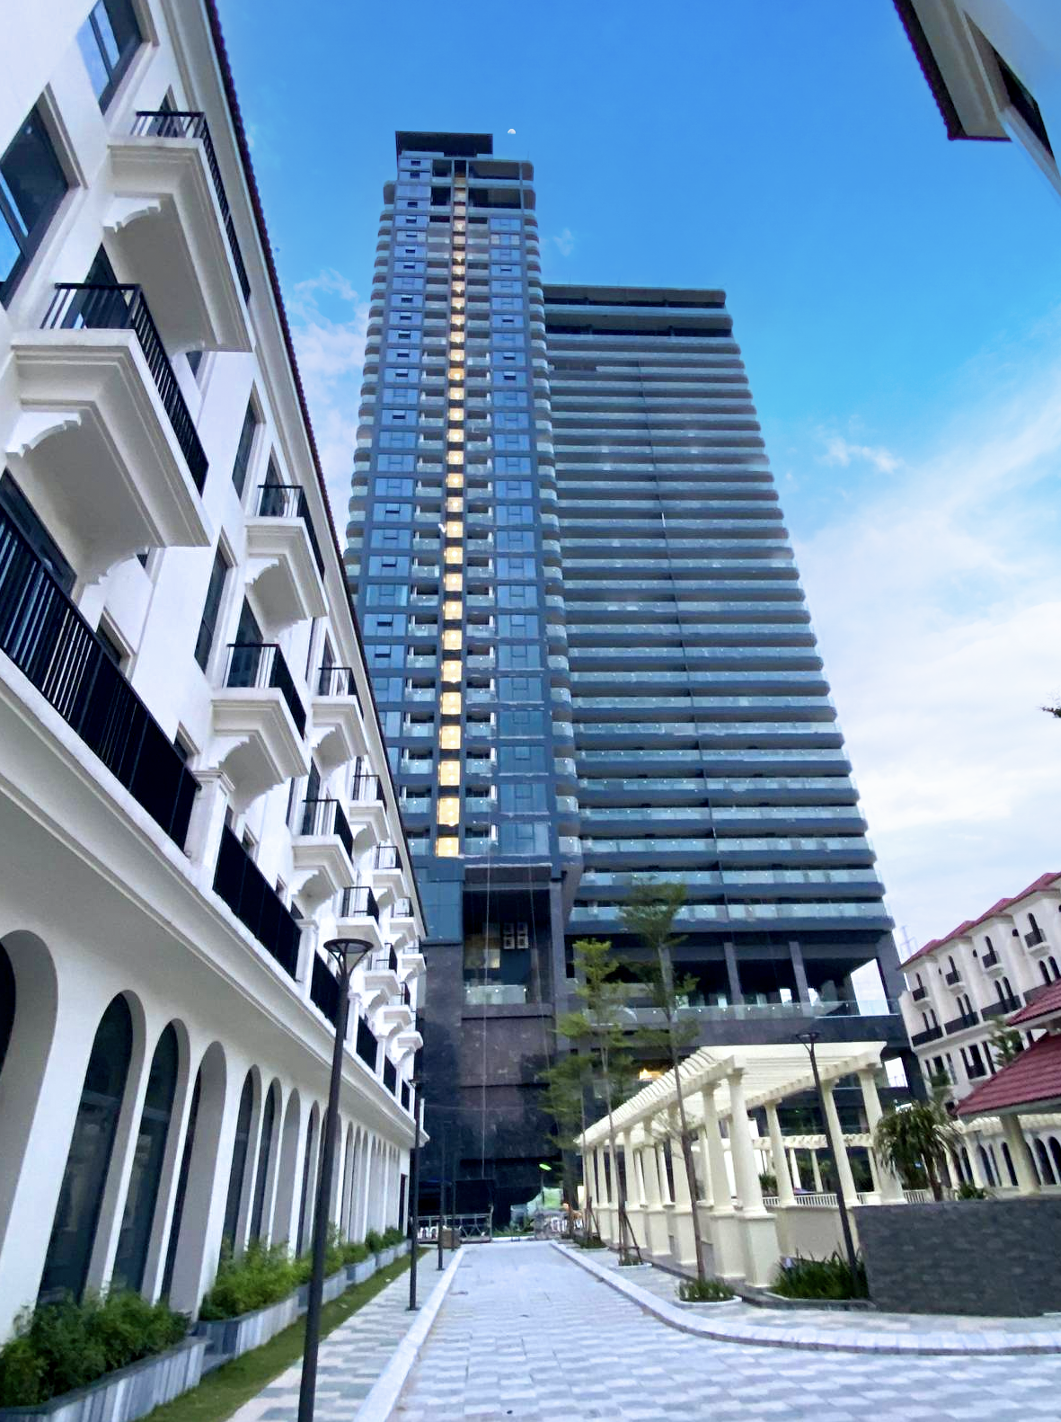 Tòa tháp 35 tầng đã hiện hữu cùng chuỗi shophouse thấp tầng kế bên sẽ cung cấp cho thị trường hơn 200 căn hộ cao cấp